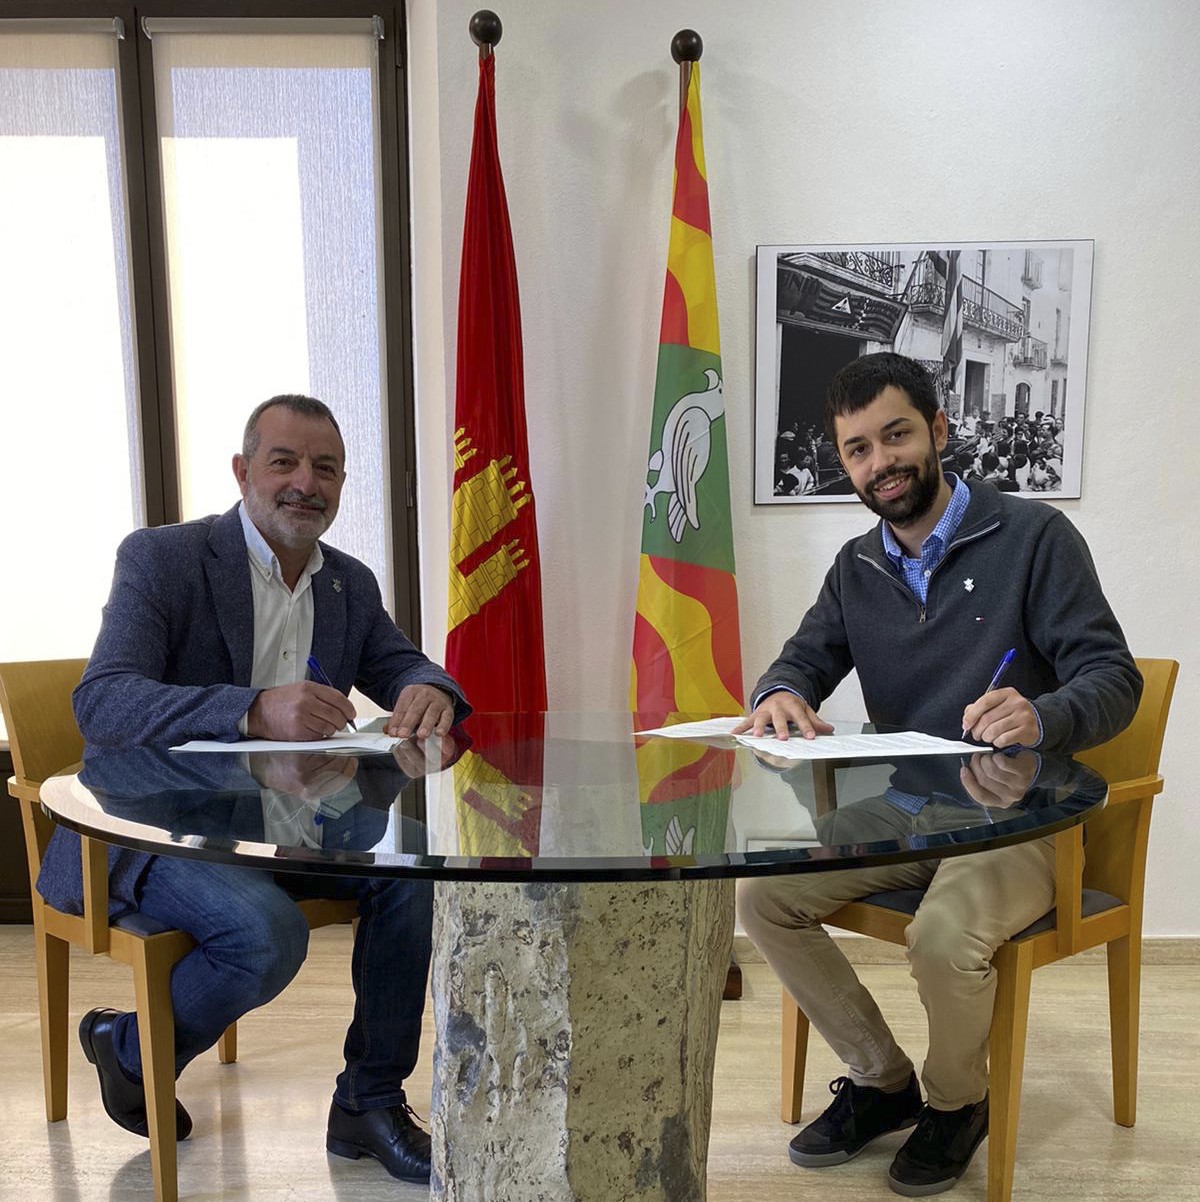 Els alcaldes de Sant Feliu de Buixalleu (esquerra) i Hostalric (dreta) signant el conveni de la delimitació territorial dels dos municipis